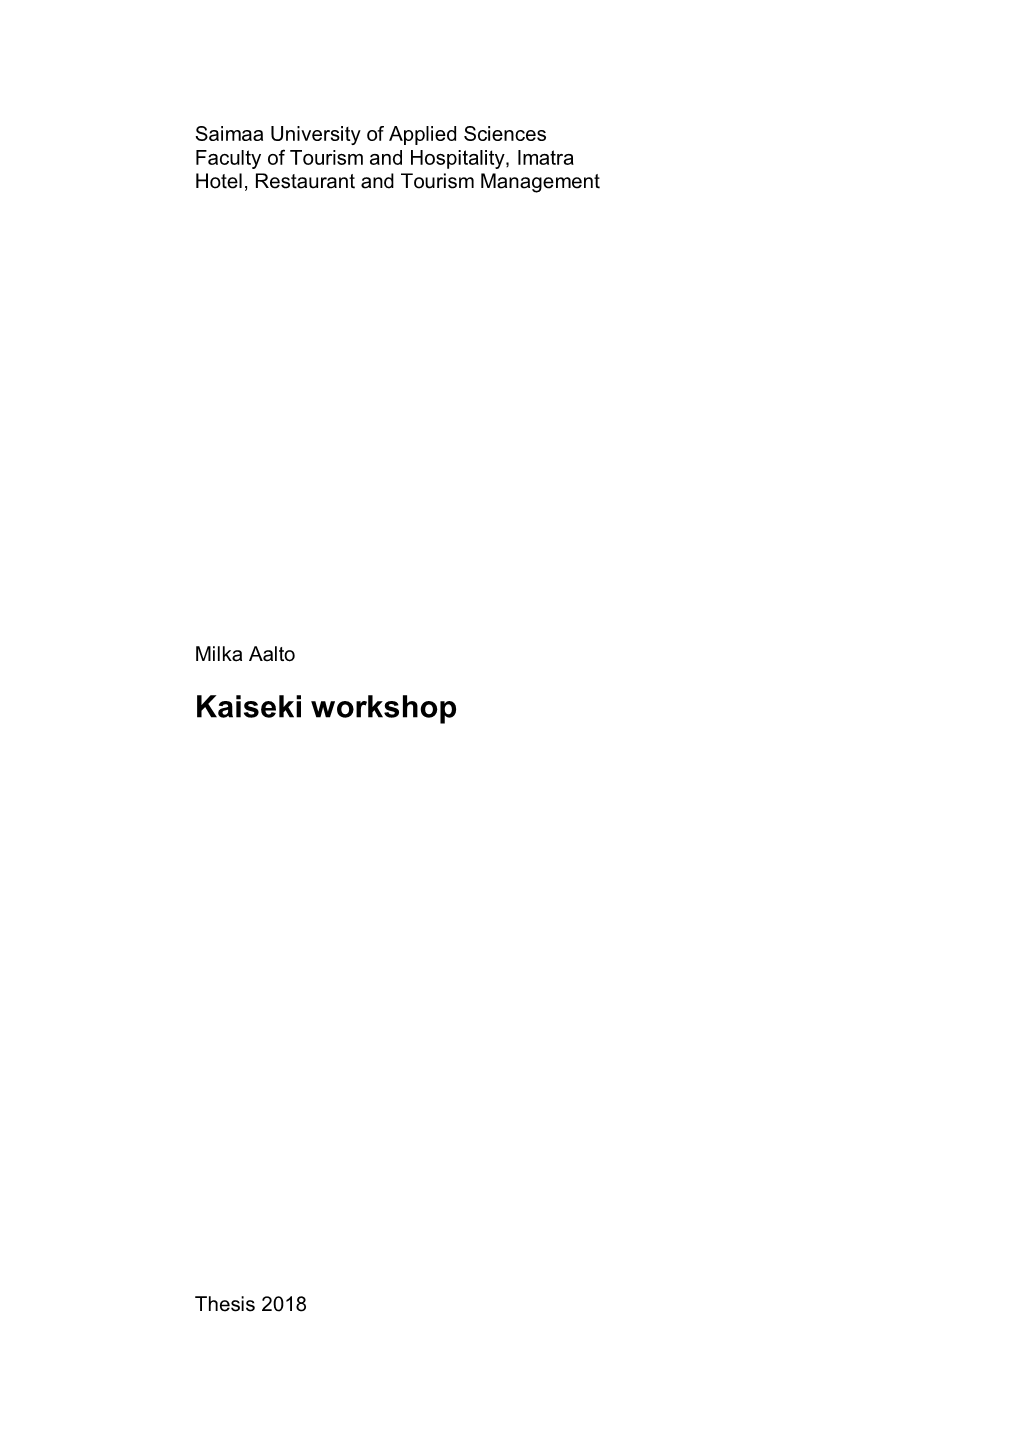 Kaiseki Workshop